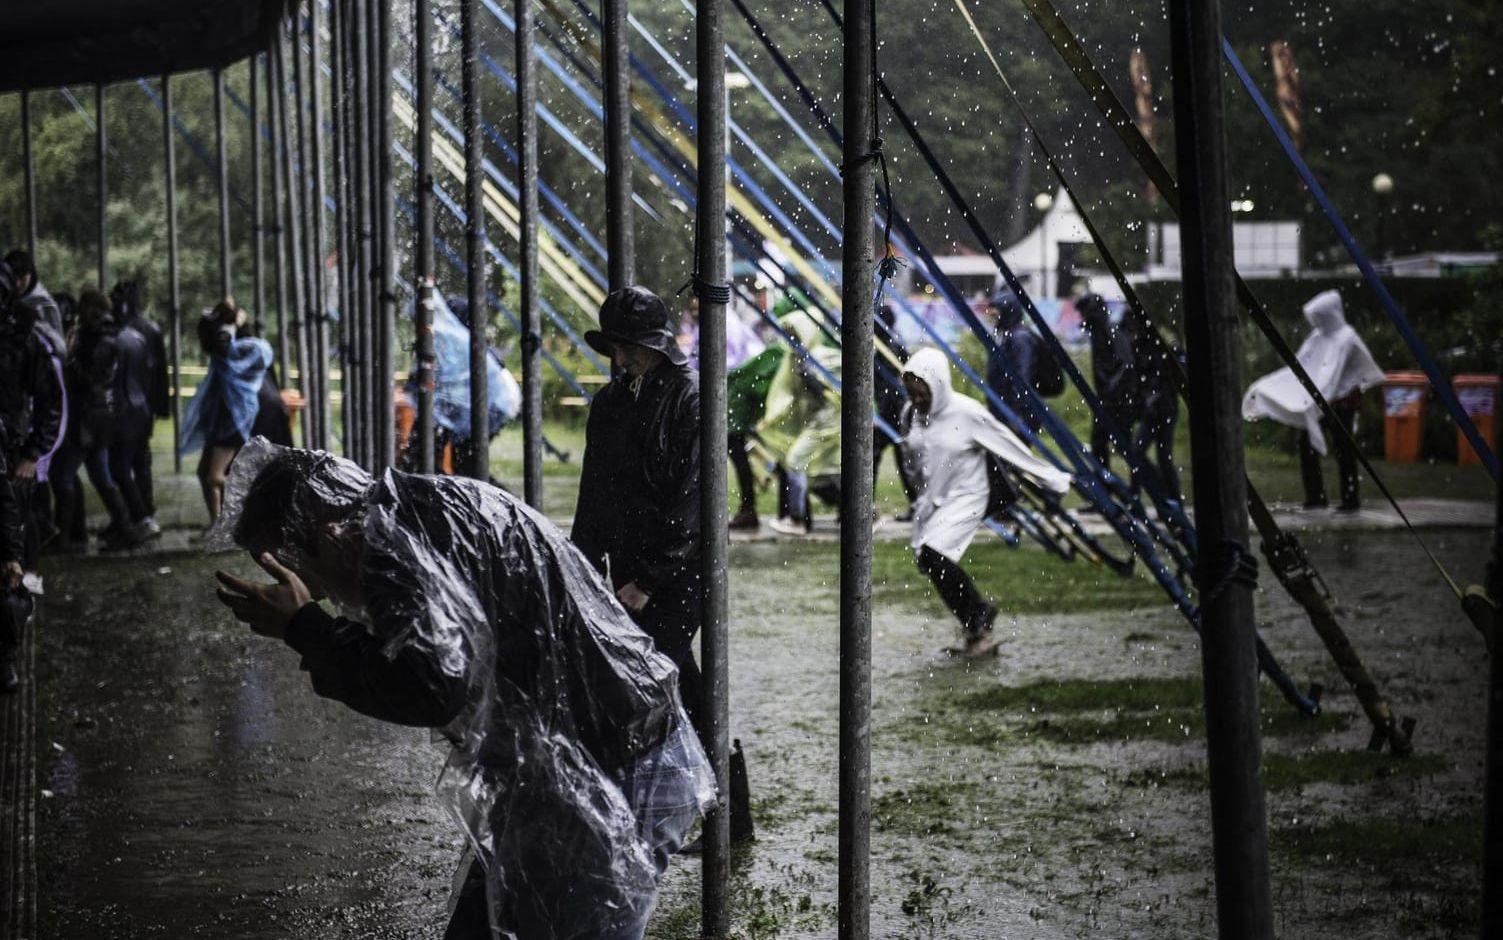 Inför årets festival ser prognosen inte lovande ut, det kommer troligtsvis regna igen. Bild: Olof Ohlsson